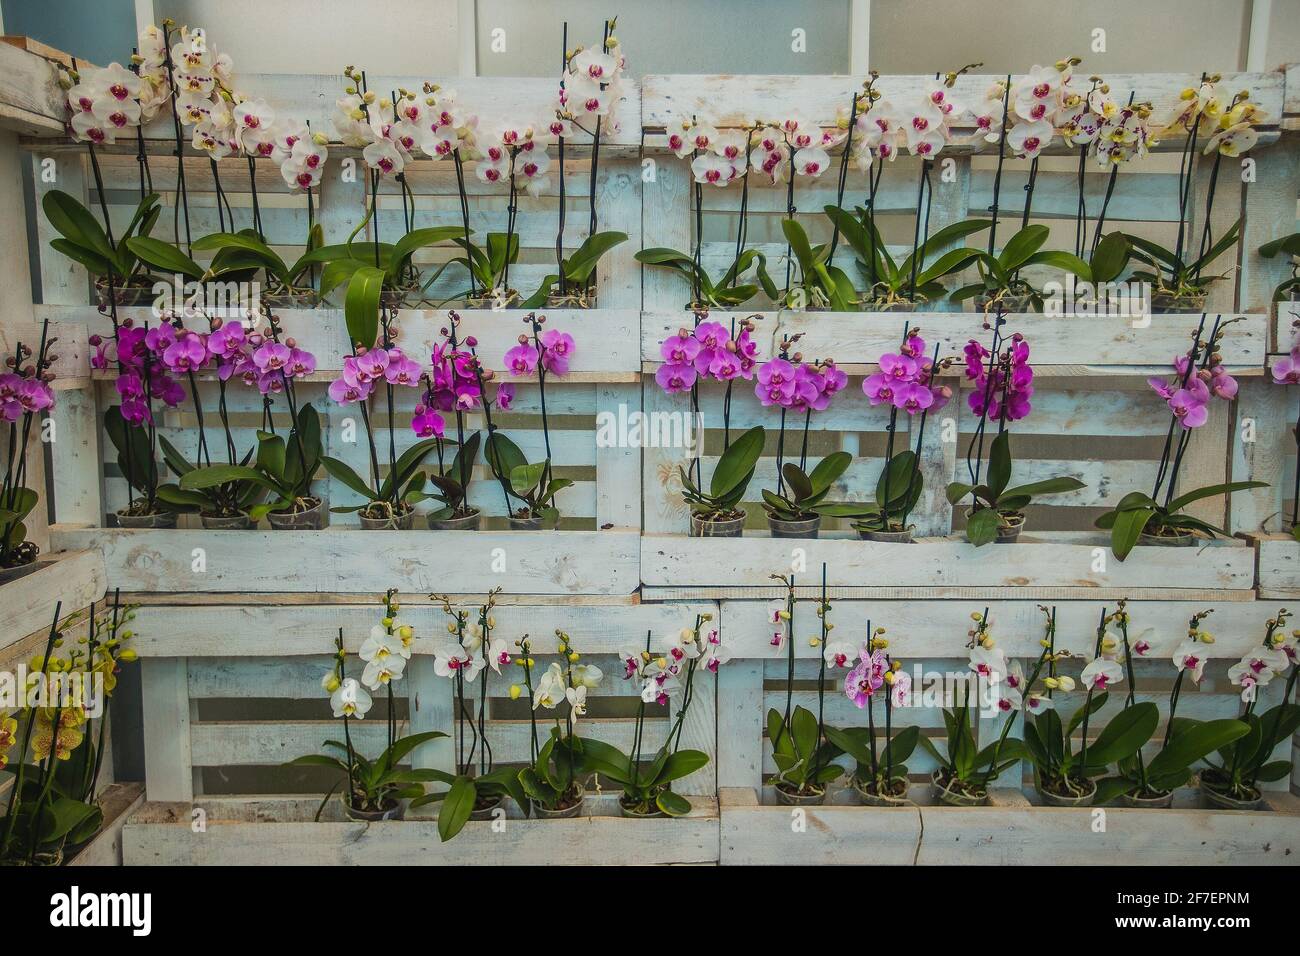 Une collection de fleurs d'orchidées sur un magnifique mur blanc  d'europalette. Orchidées colorées prêtes à l'emploi Photo Stock - Alamy